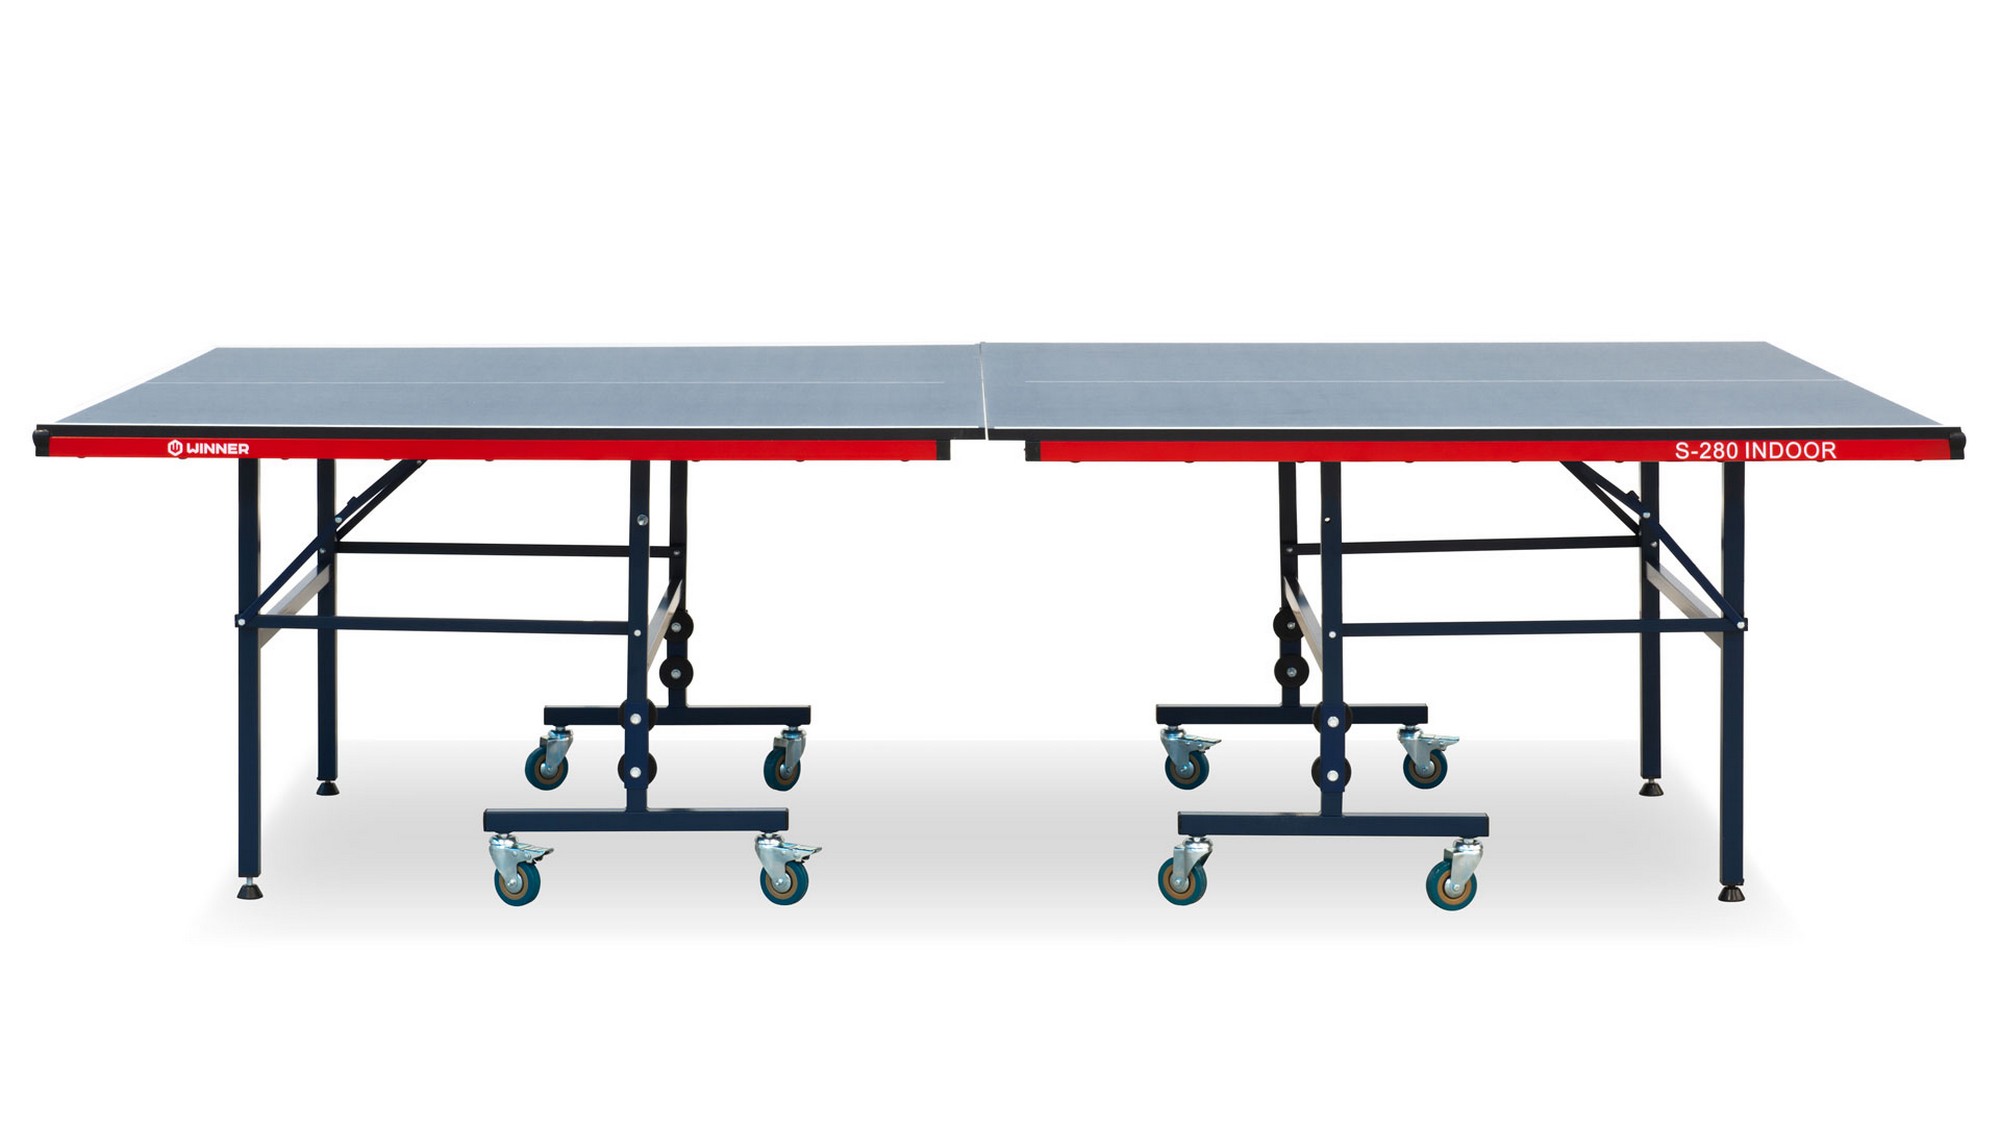 Теннисный стол складной для помещений S-280 Winner 51.280.02.0 2000_1125